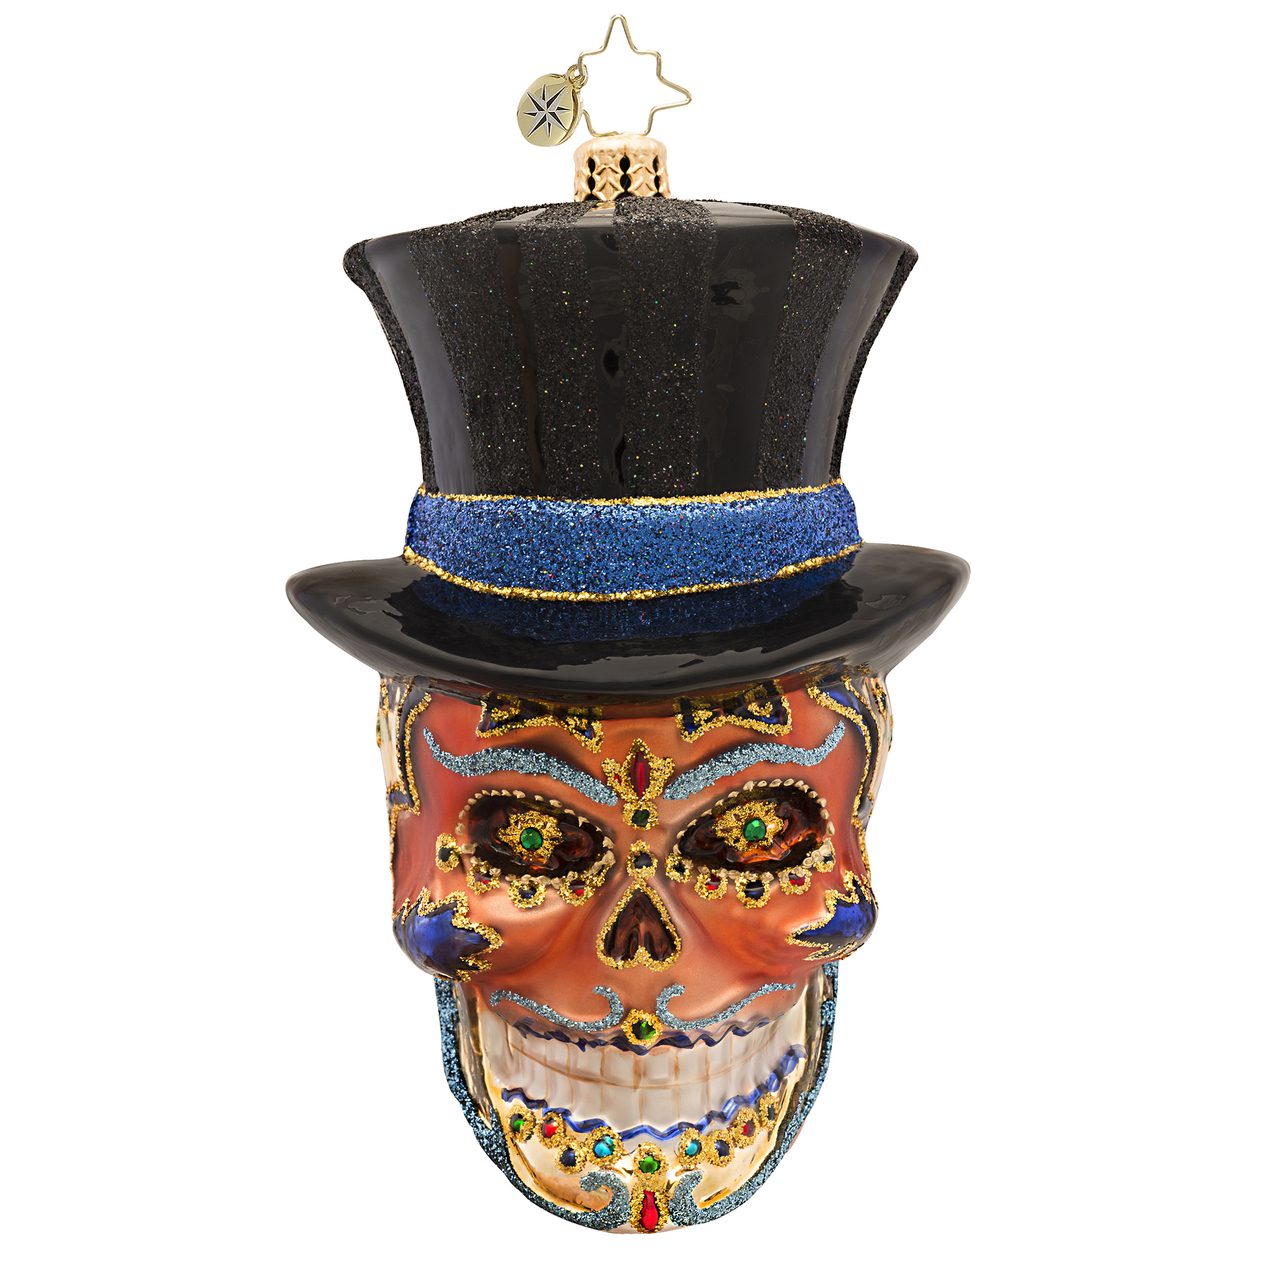 Mr. Dead Skull Ornament